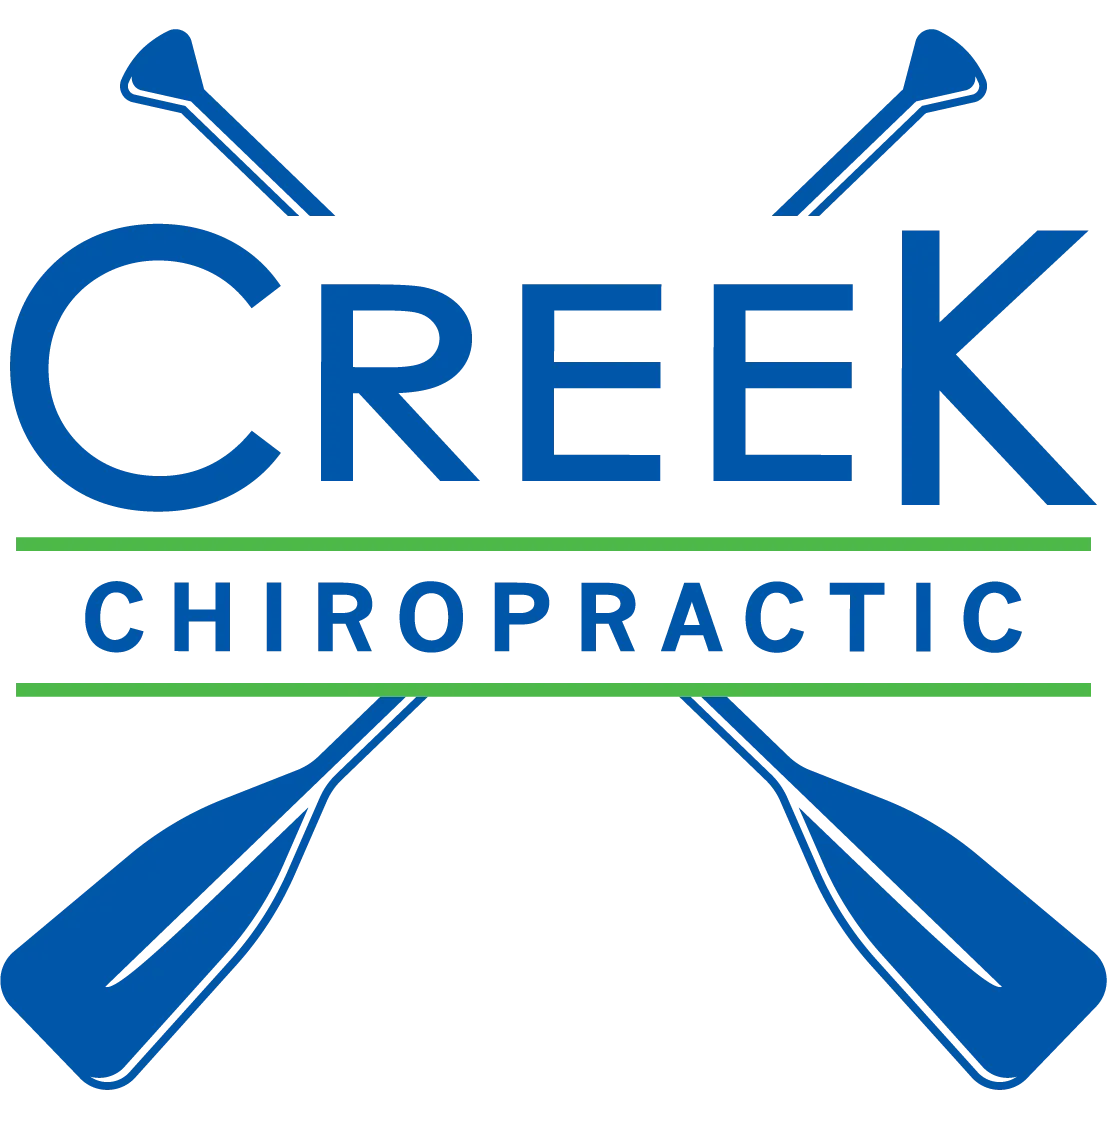 Creek Chiropractic